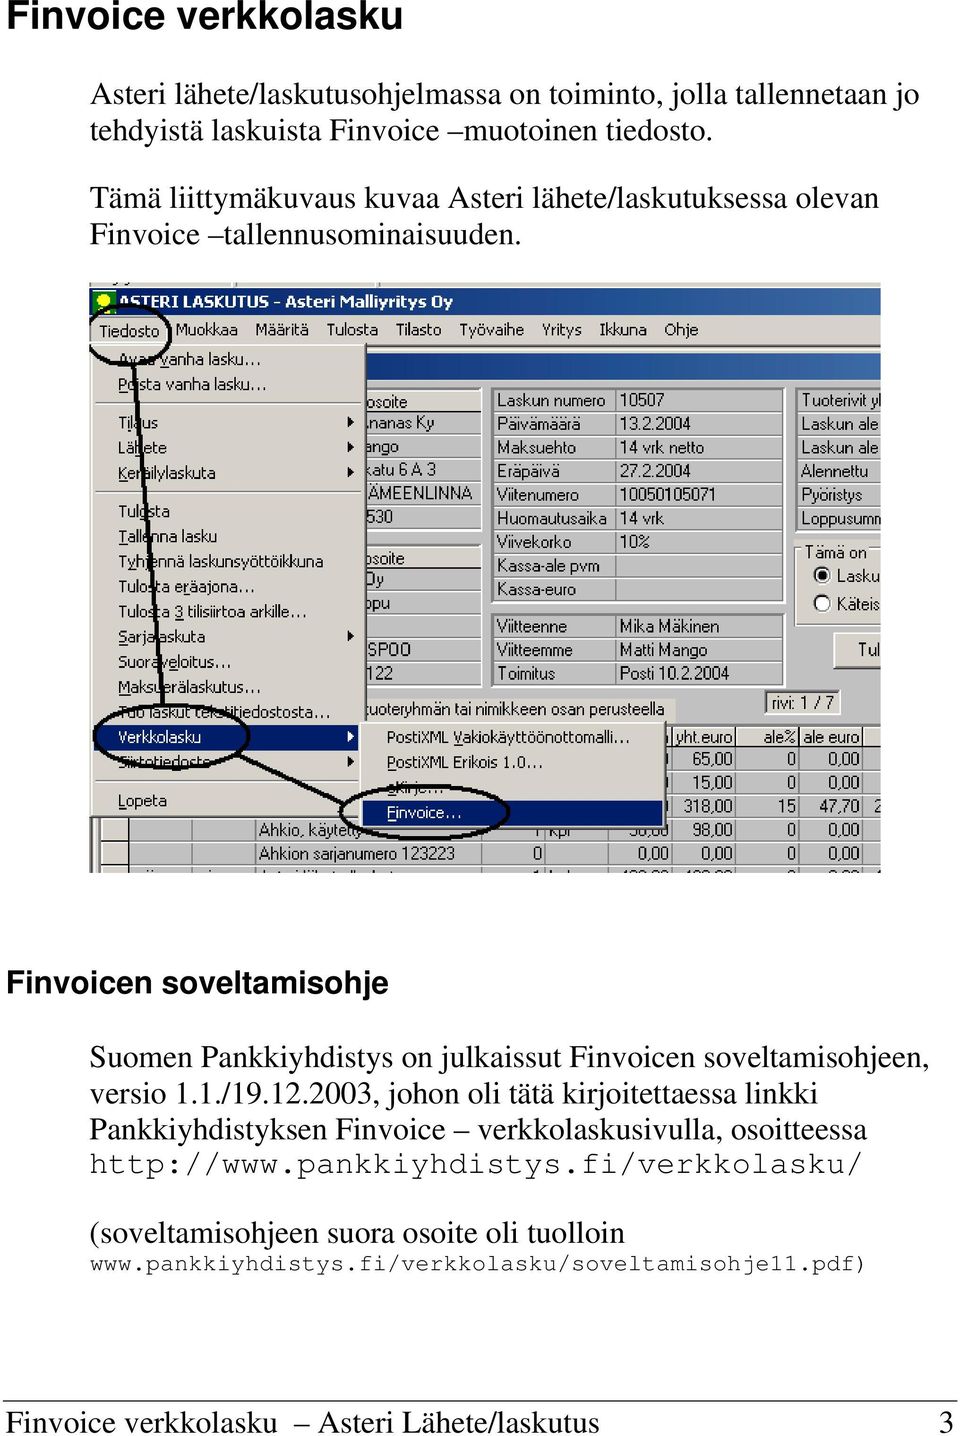 Finvoicen soveltamisohje Suomen Pankkiyhdistys on julkaissut Finvoicen soveltamisohjeen, versio 1.1./19.12.